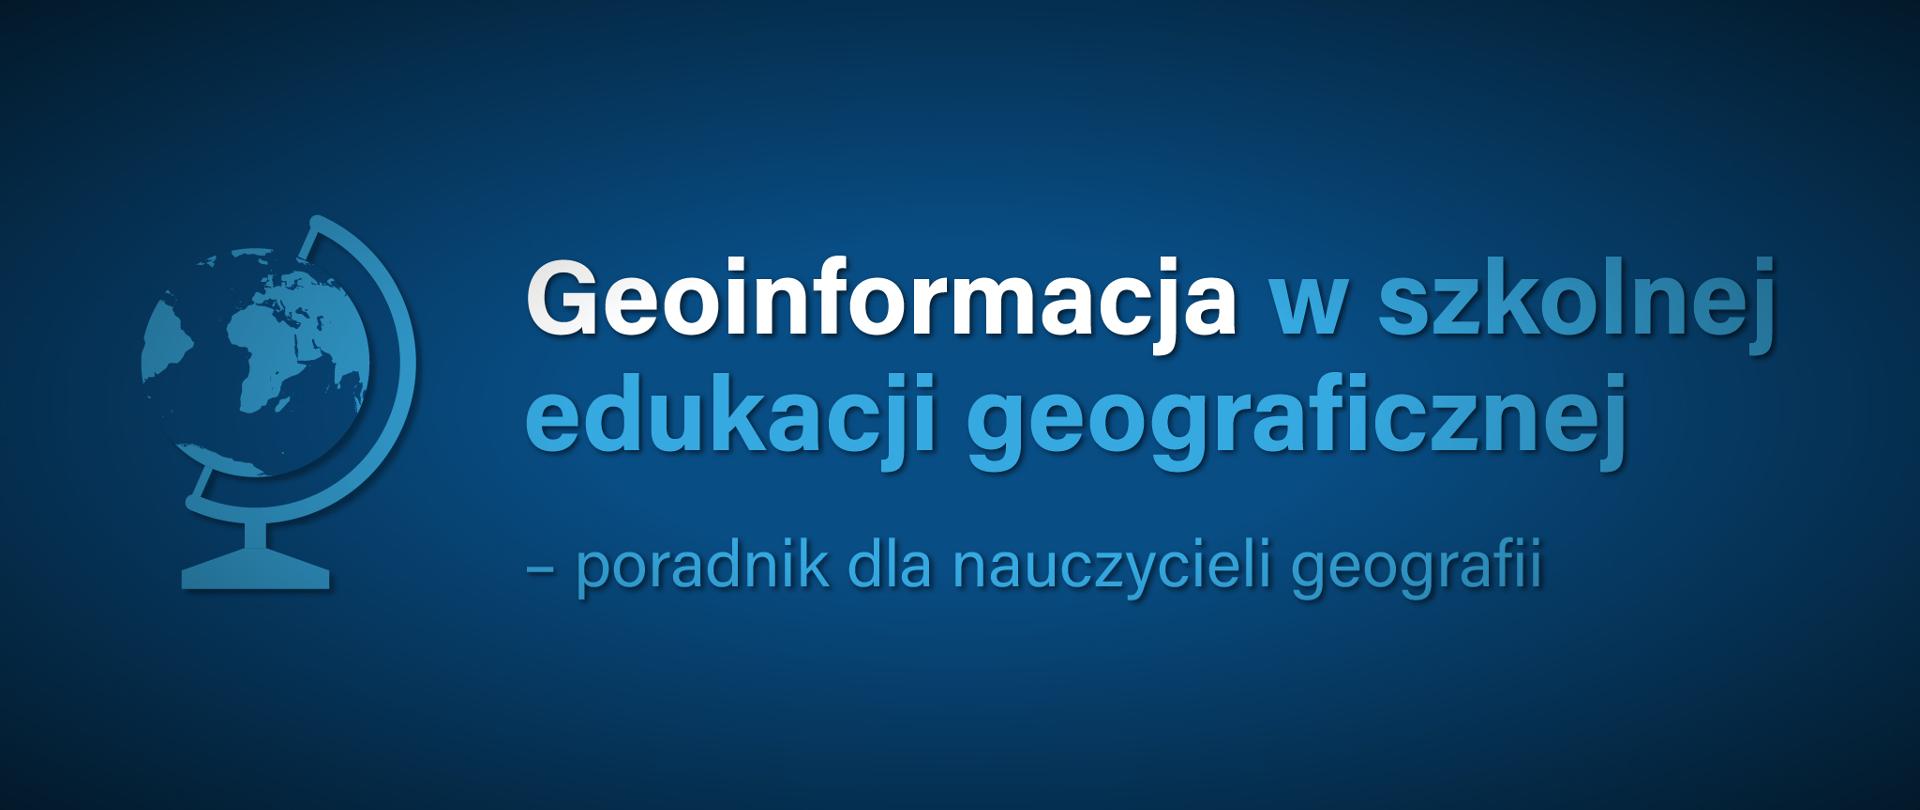 Granatowa grafika z globusem i tekstem: "Geoinformacja w szkolnej edukacji geograficznej - poradnik dla nauczycieli geografii".